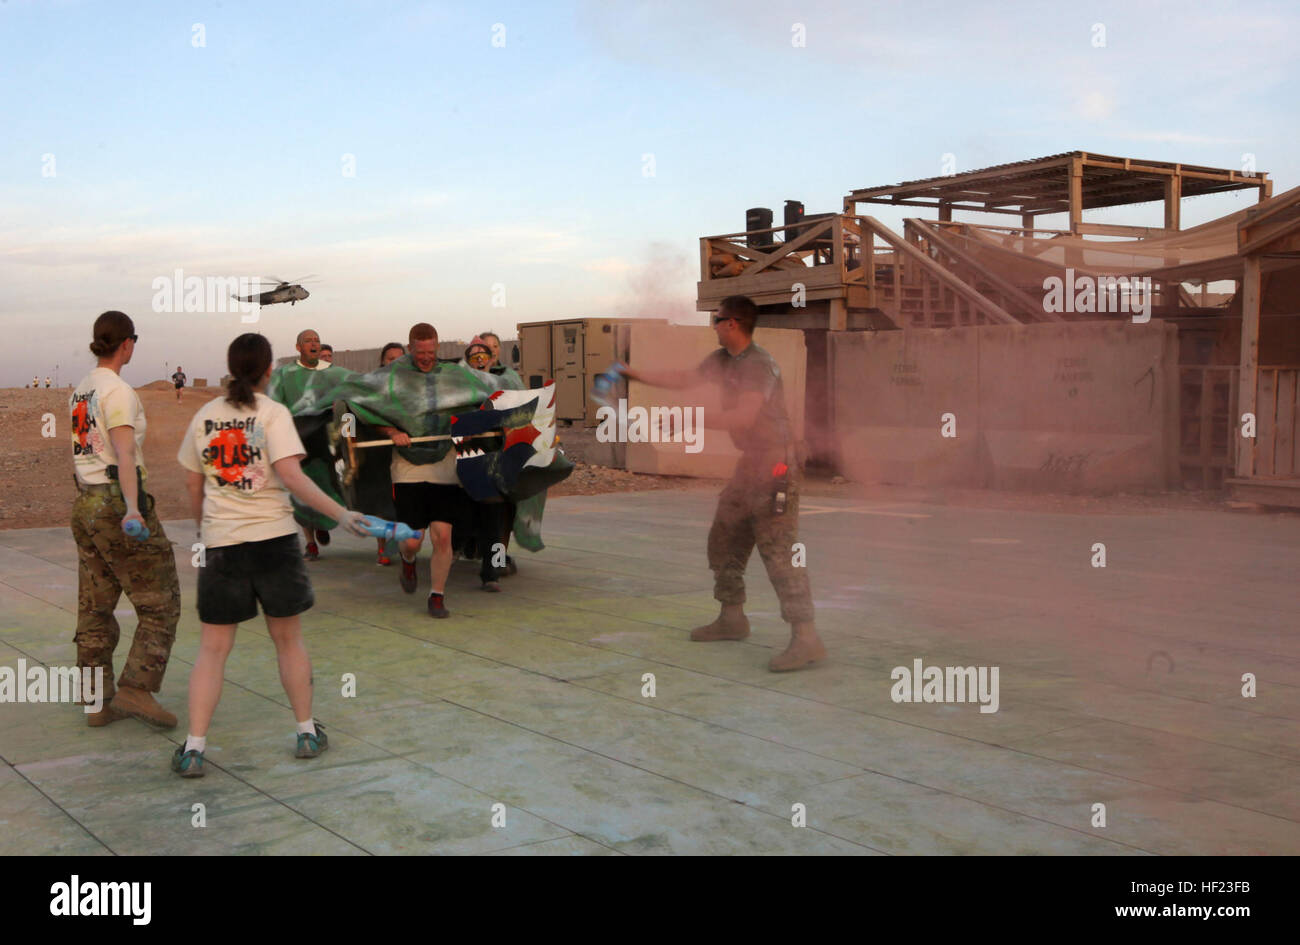 Une équipe de course en costume d'accolades d'être éclaboussé de couleur lorsqu'ils remplir un autre 1 kilomètres de tour pendant le 'Splash' Dustoff Dash 5K à bord le Camp Bastion, l'Afghanistan, le 19 avril, 2014. L'escadron d'évacuation médicale connue sous le nom de "ustoff» a organisé une course de 5 km pour les militaires à bord de Bastion et Camps Sapadalure pour apporter un peu de plaisir et de soulagement du stress pour les forces de coalition du Commandement régional (Sud-ouest). Les participants ont été encouragés à s'habiller en costumes et accessoires pour l'exécuter et sortir à établir de bons rapports. L'USMC (Photo : Sgt. Frances Johnson/libérés) Dustoff Splash Dash Banque D'Images